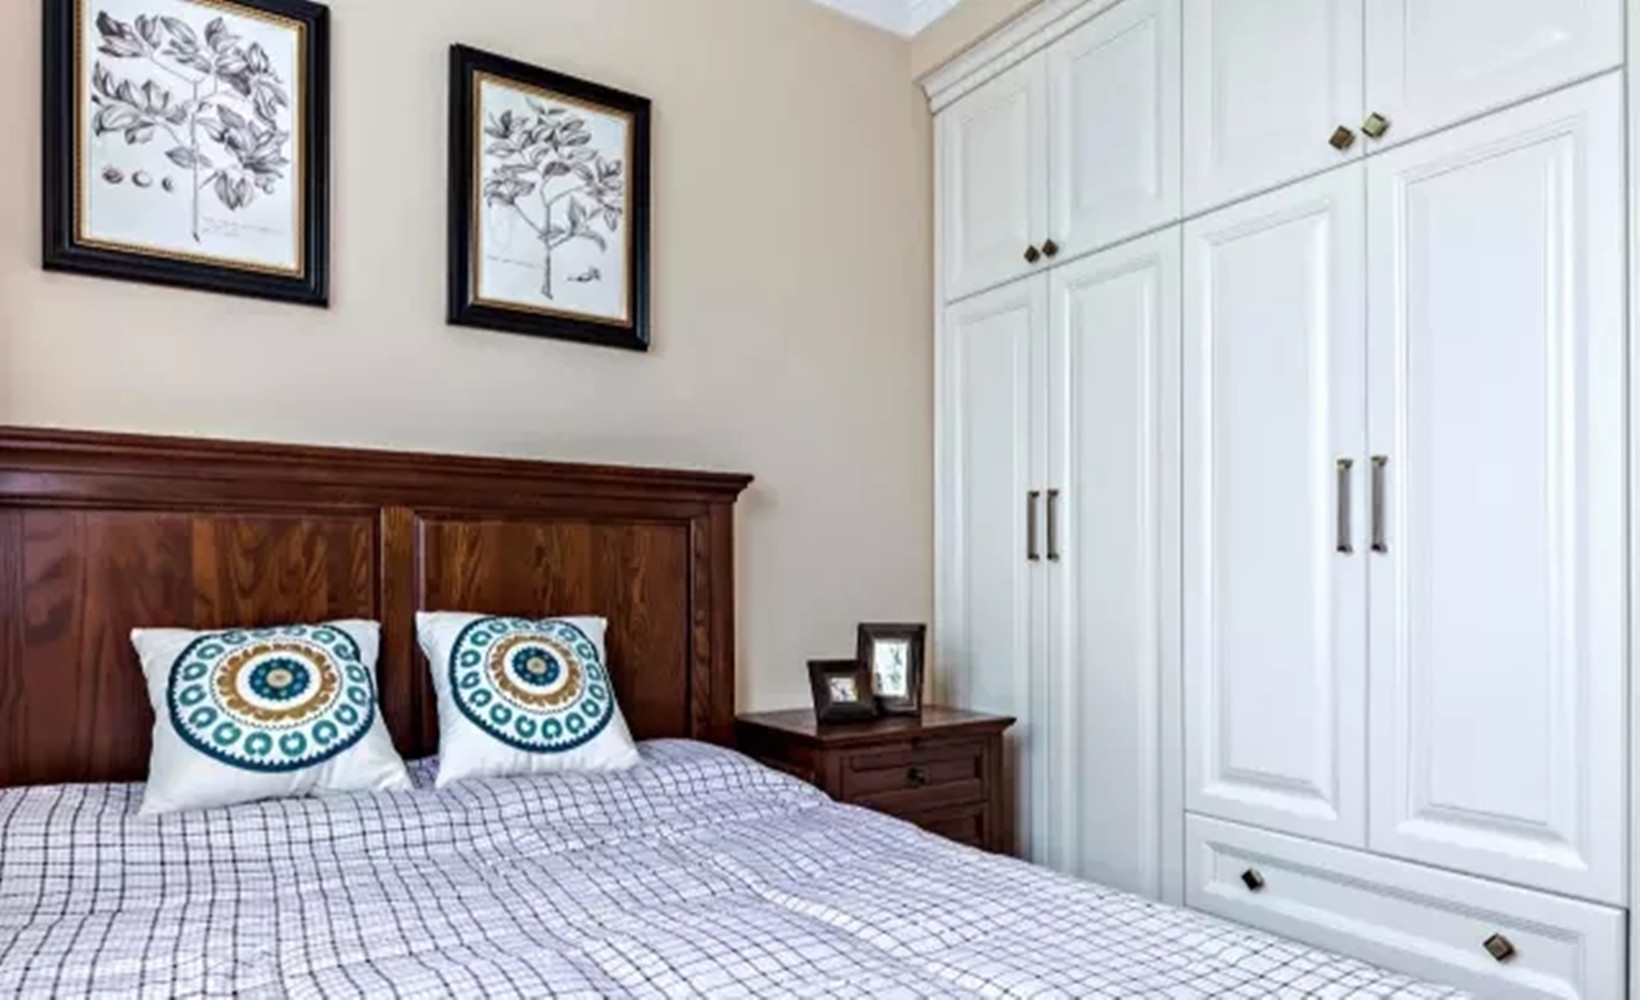 三居 简约 美式 卧室图片来自高度国际装饰宋增会在金江小区134平米简约美式的分享